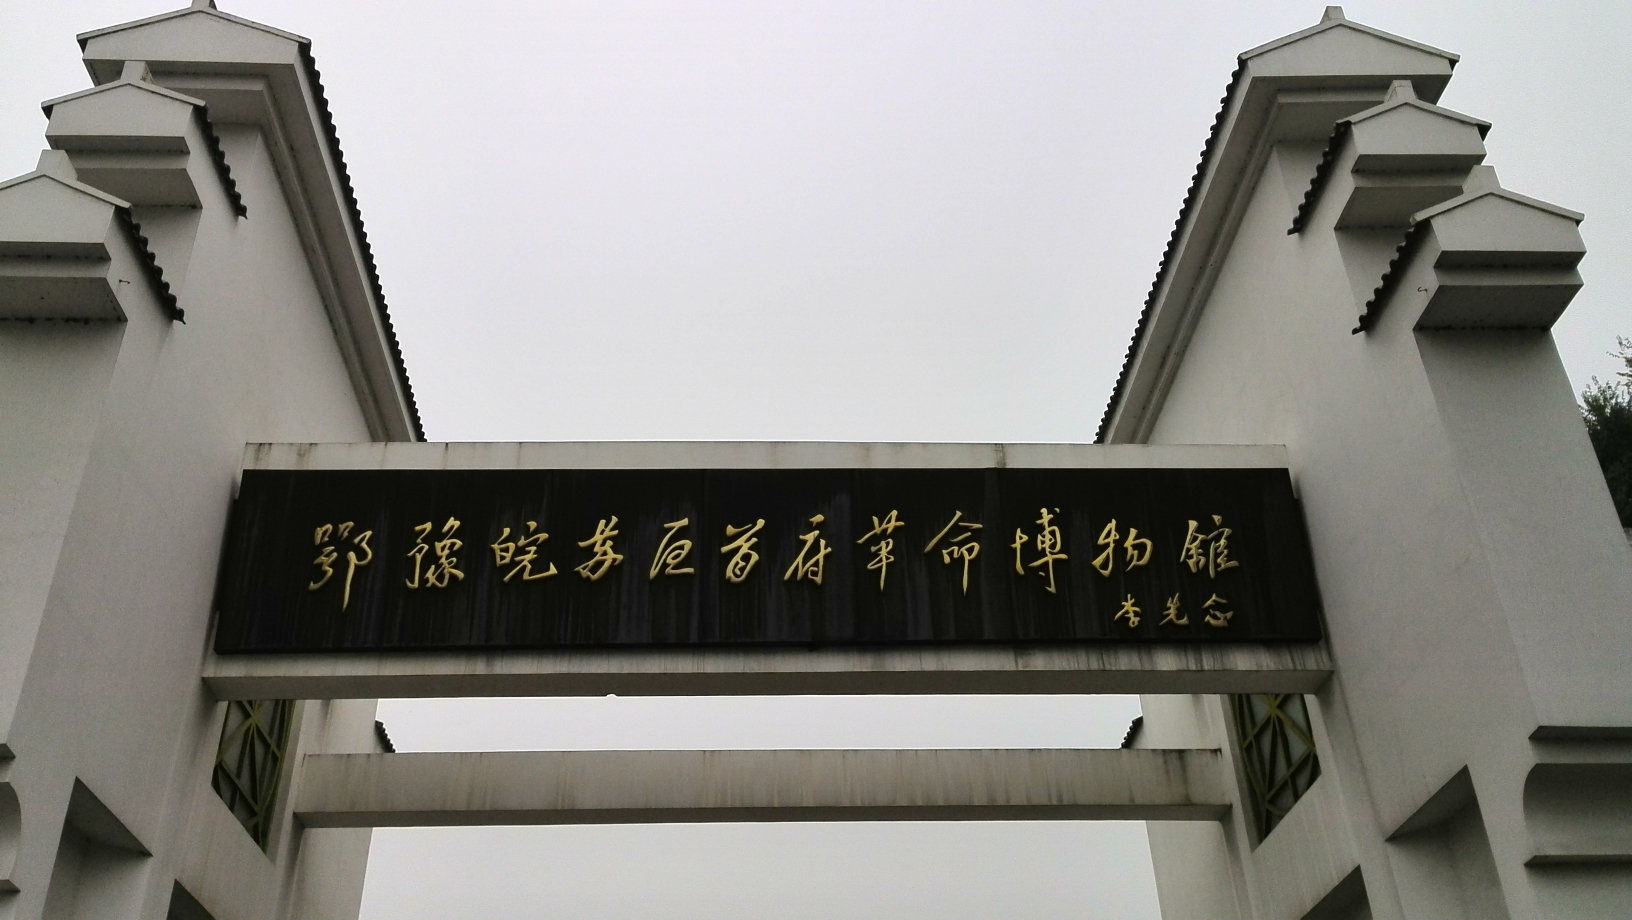 鄂豫皖苏区首府革命博物馆藏品总数为1130件（2019年），主要是革命文物，主要种类有军事用品，如“